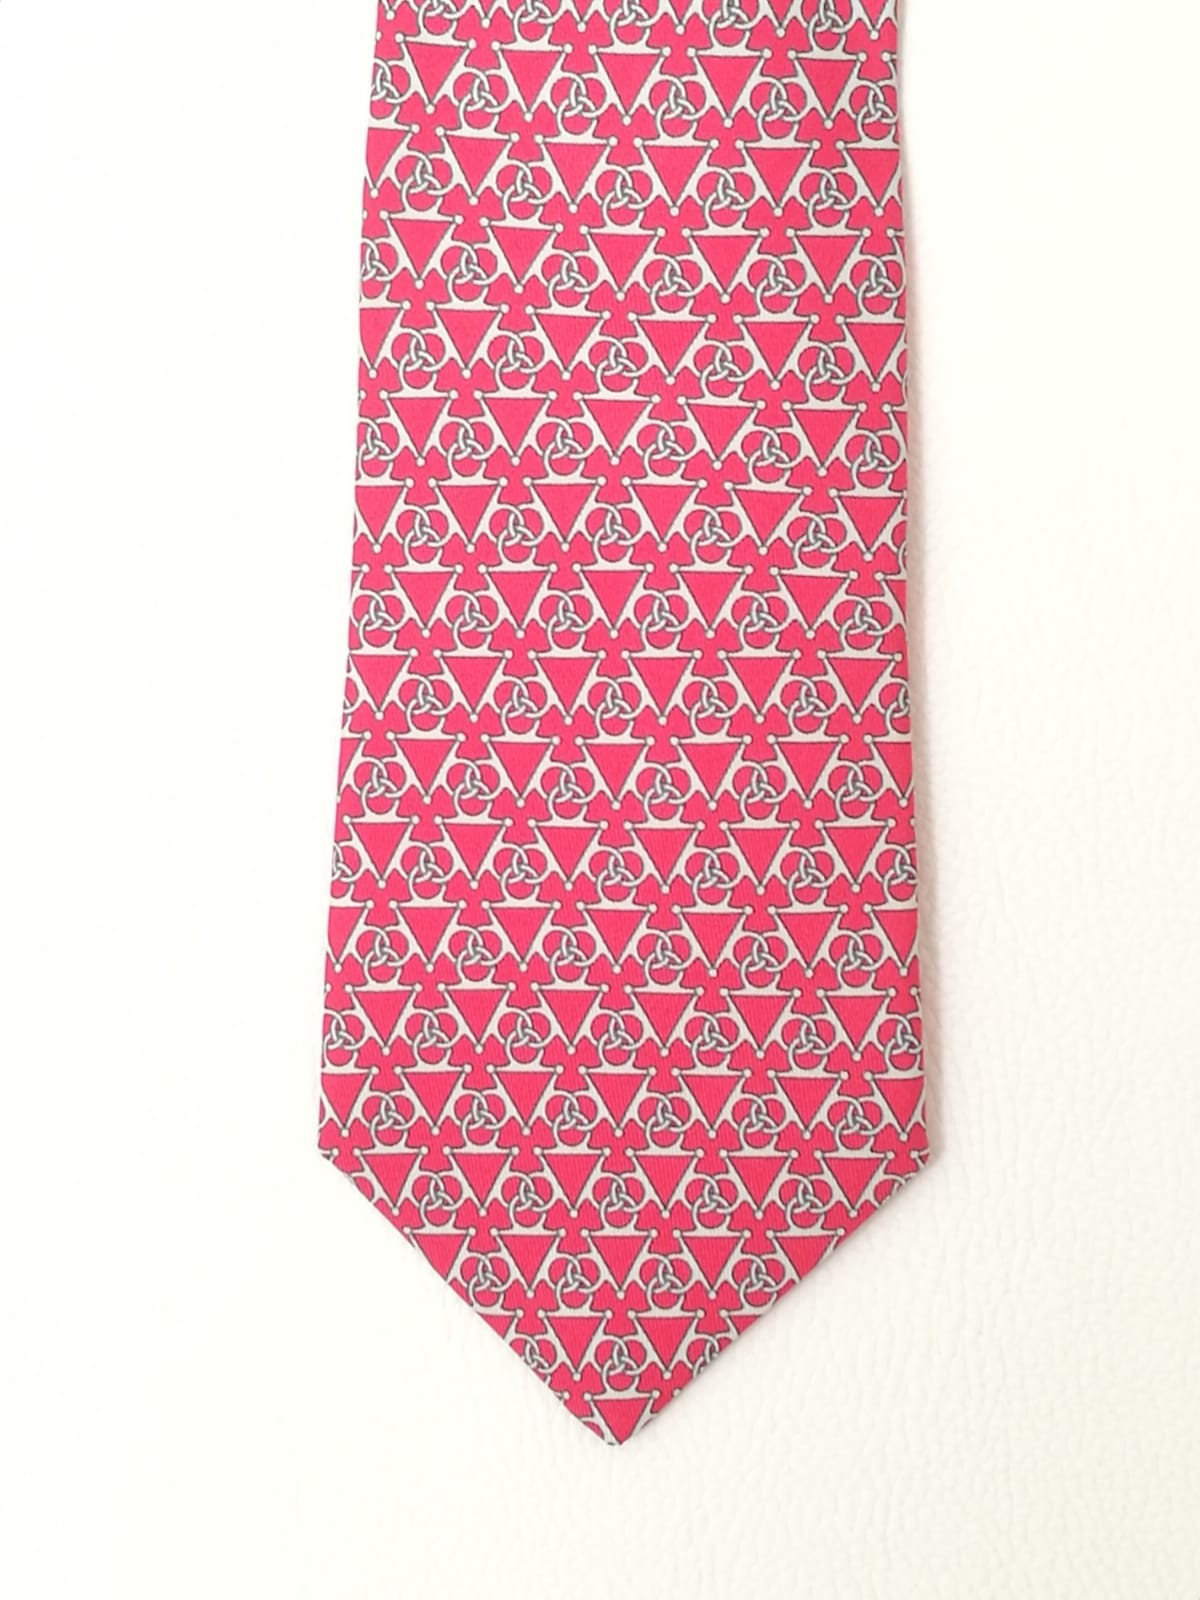 Cravatta Hermès con sfondo rosa con fantasia triangoli con cerchi bianchi